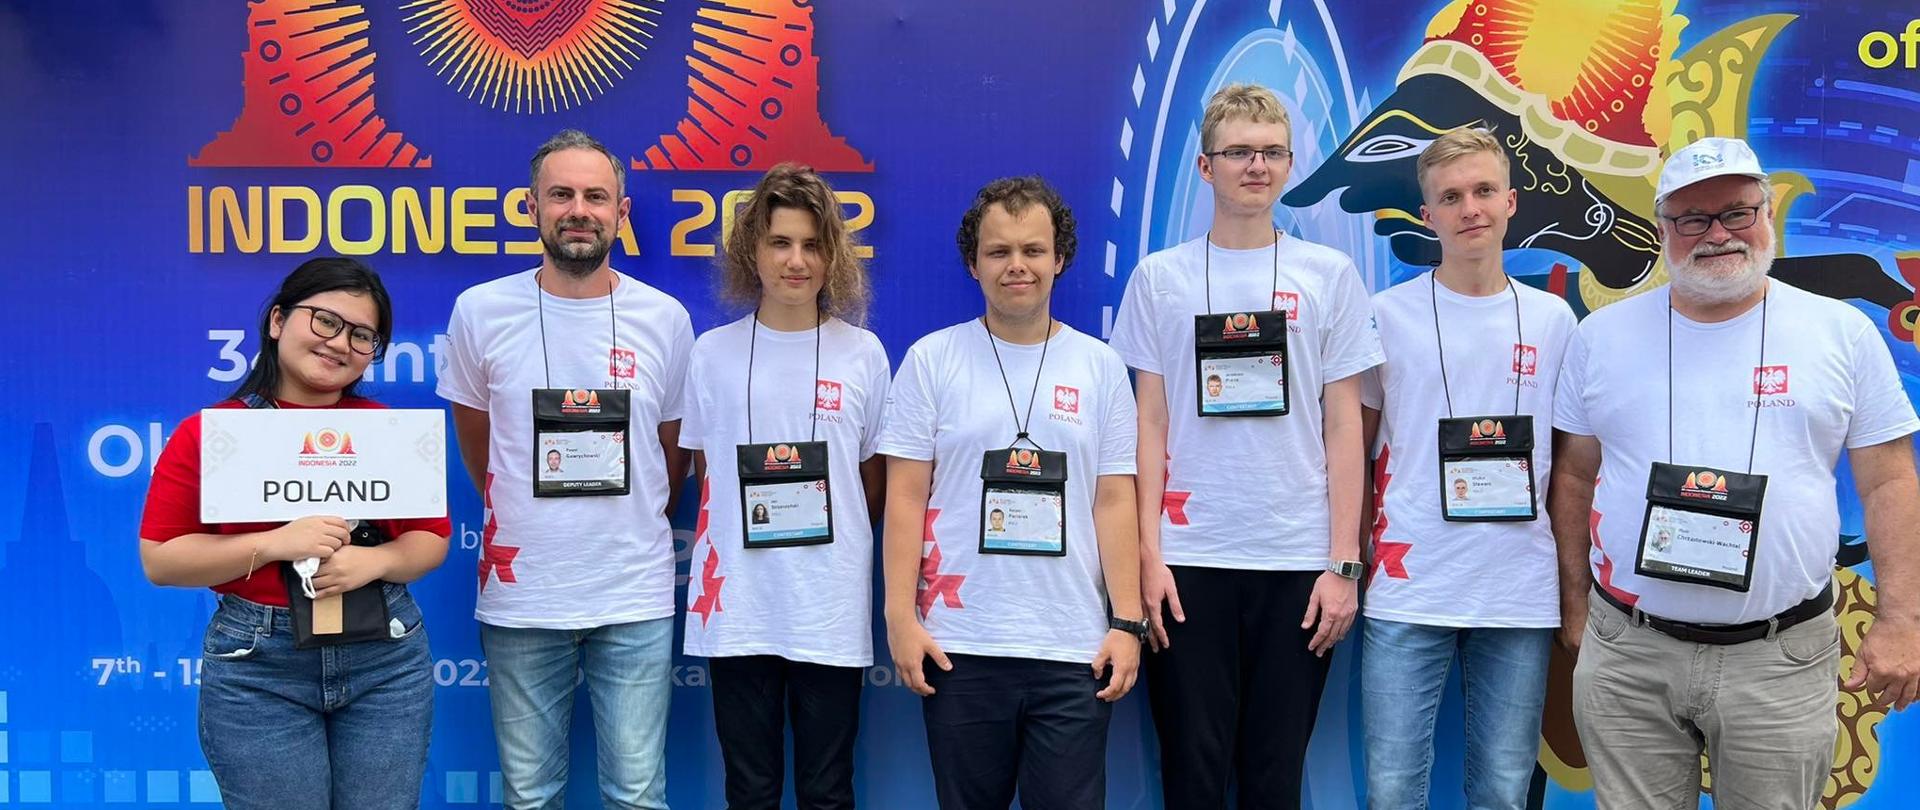 Polska delegacja - siedmioro młodych ludzi w białych koszulkach stoi pod niebieską ścianą.